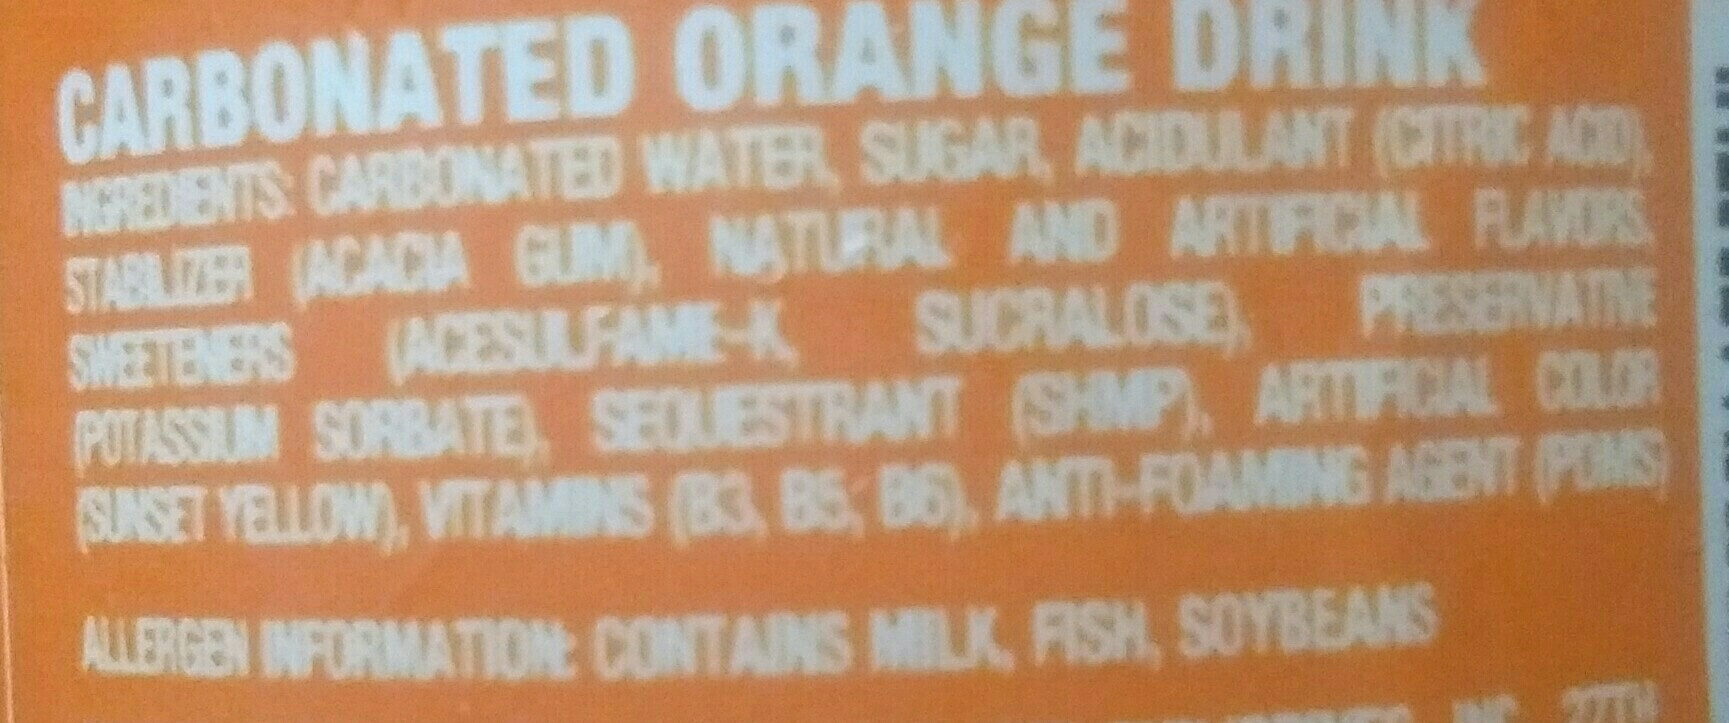 Royal Tru-Orange - Ingredients